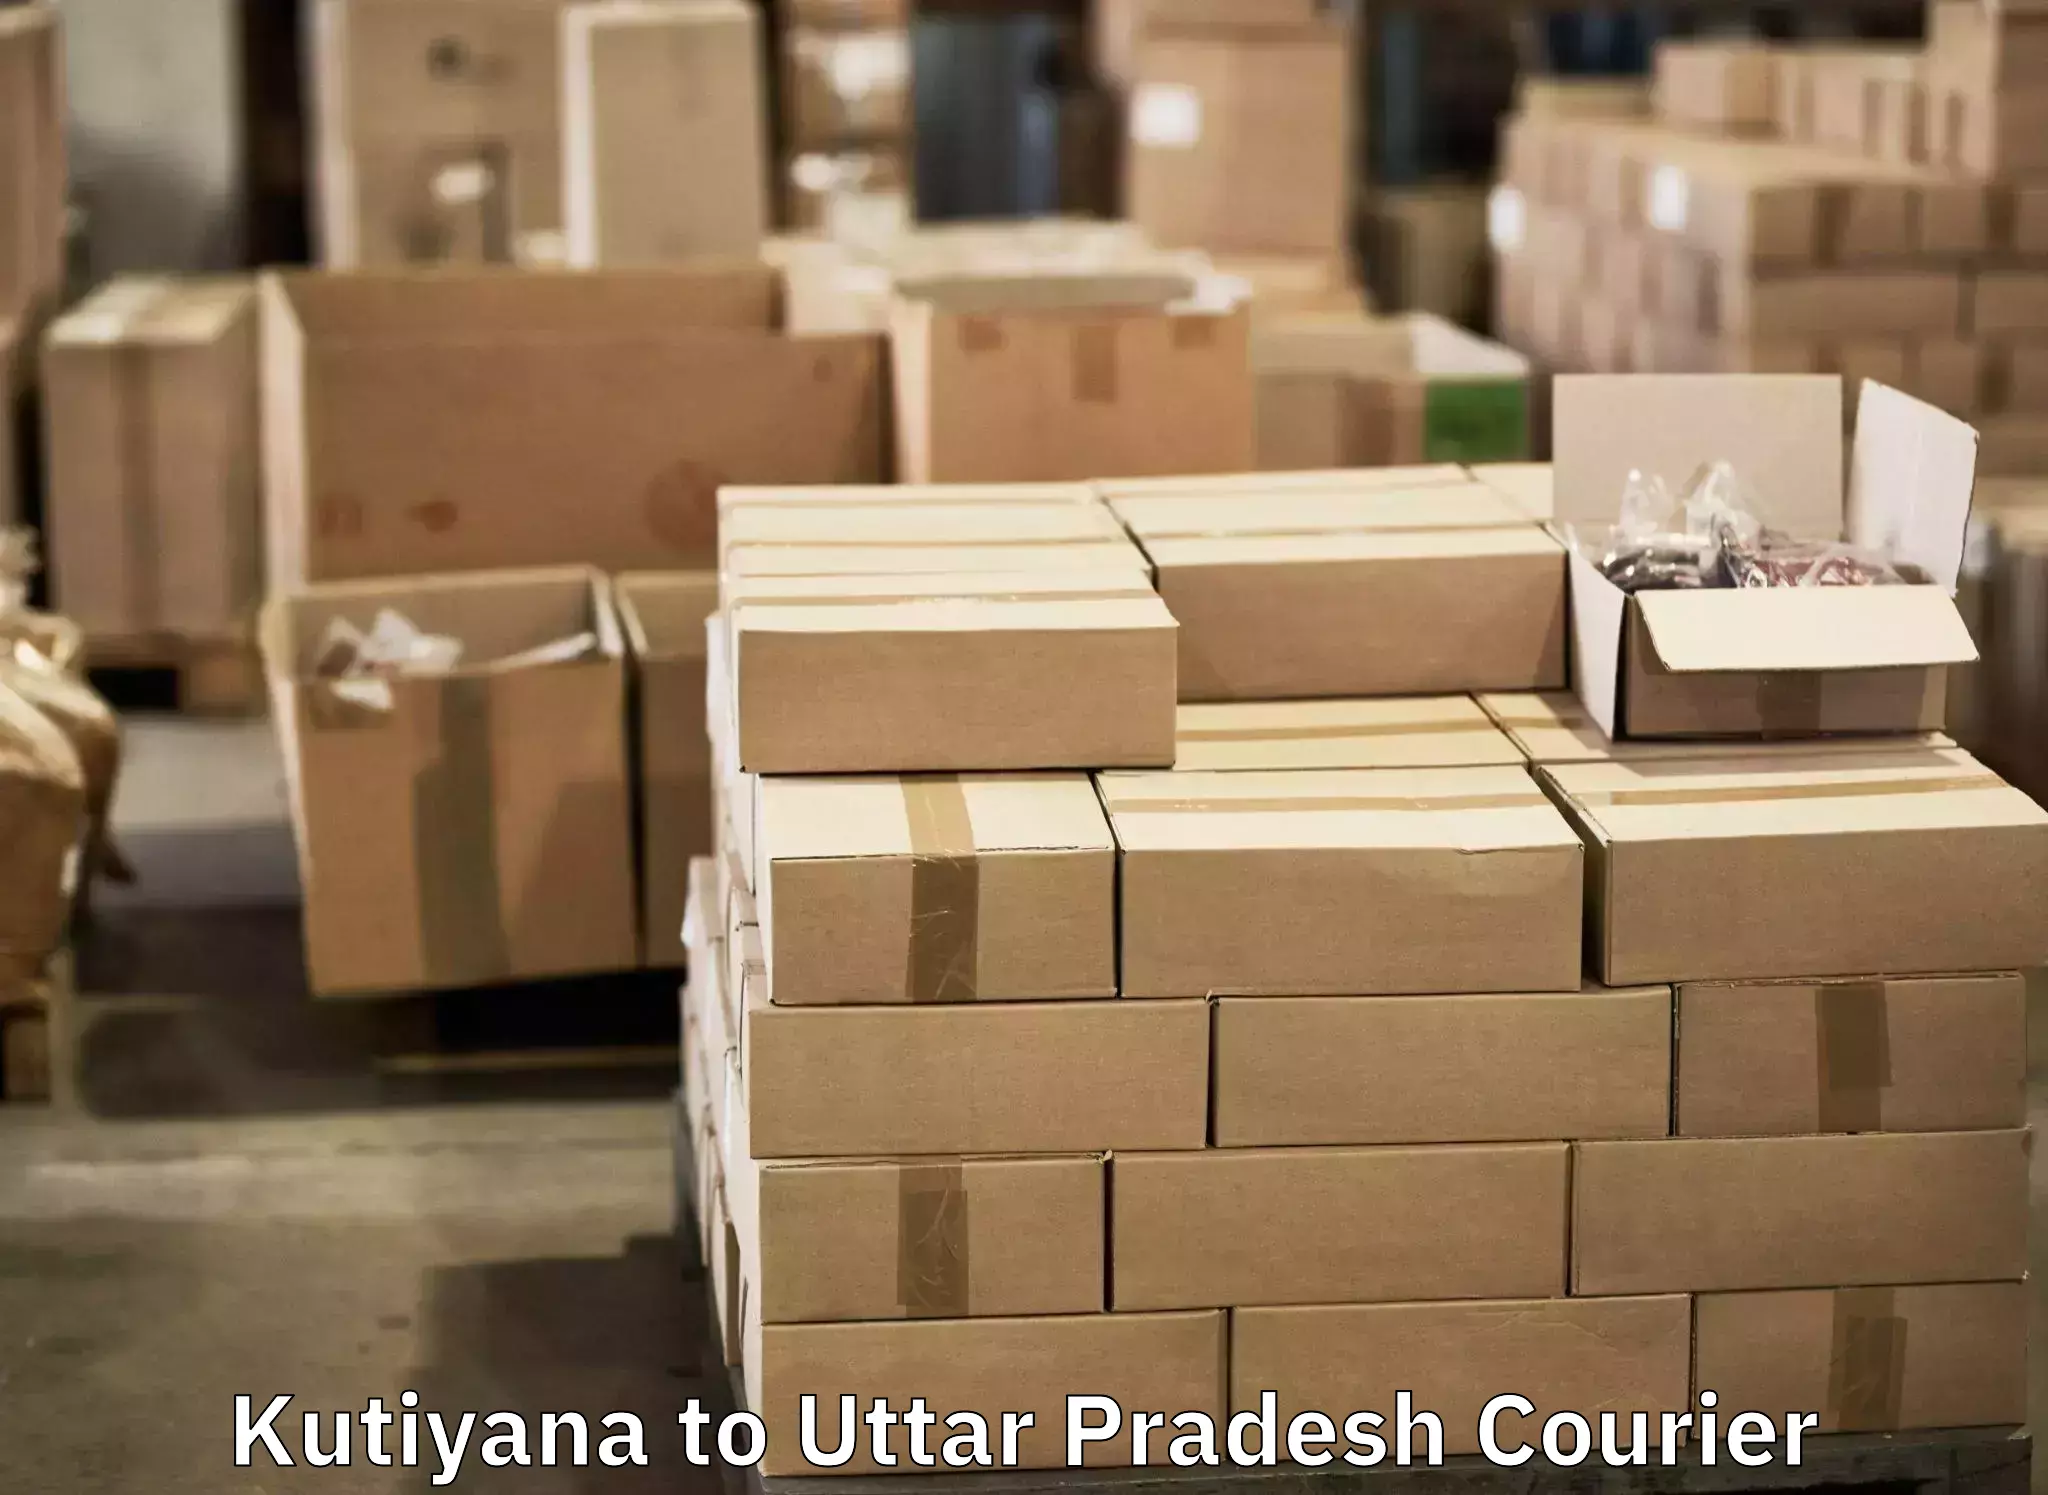 Urgent luggage shipment Kutiyana to Rudhauli